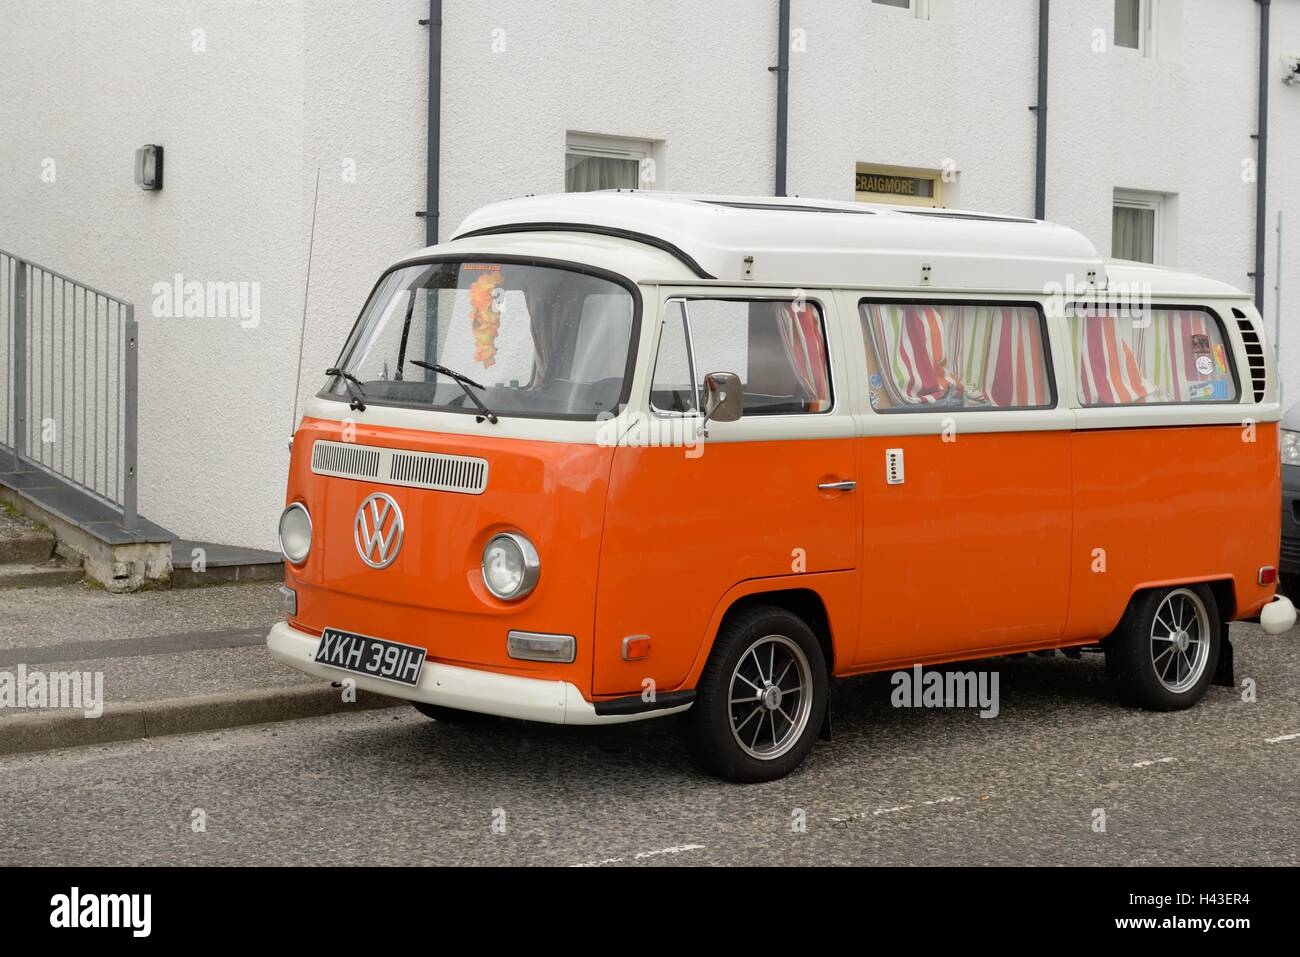 Orange Volkswagen camper van in 